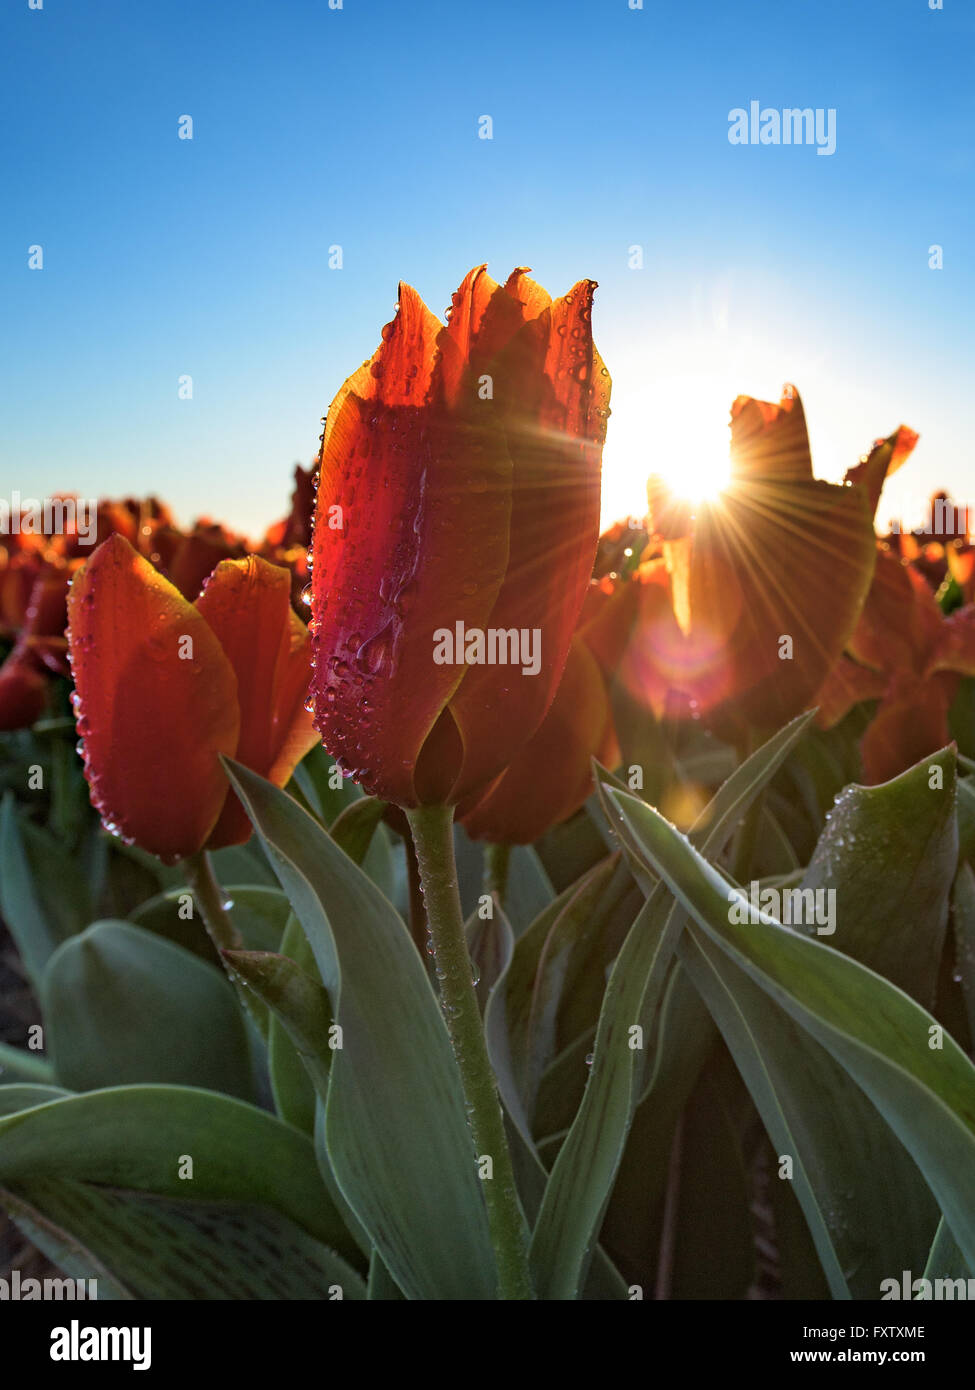 Olandese tulipani rossi con goccioline di acqua e raggi del sole nascente Foto Stock